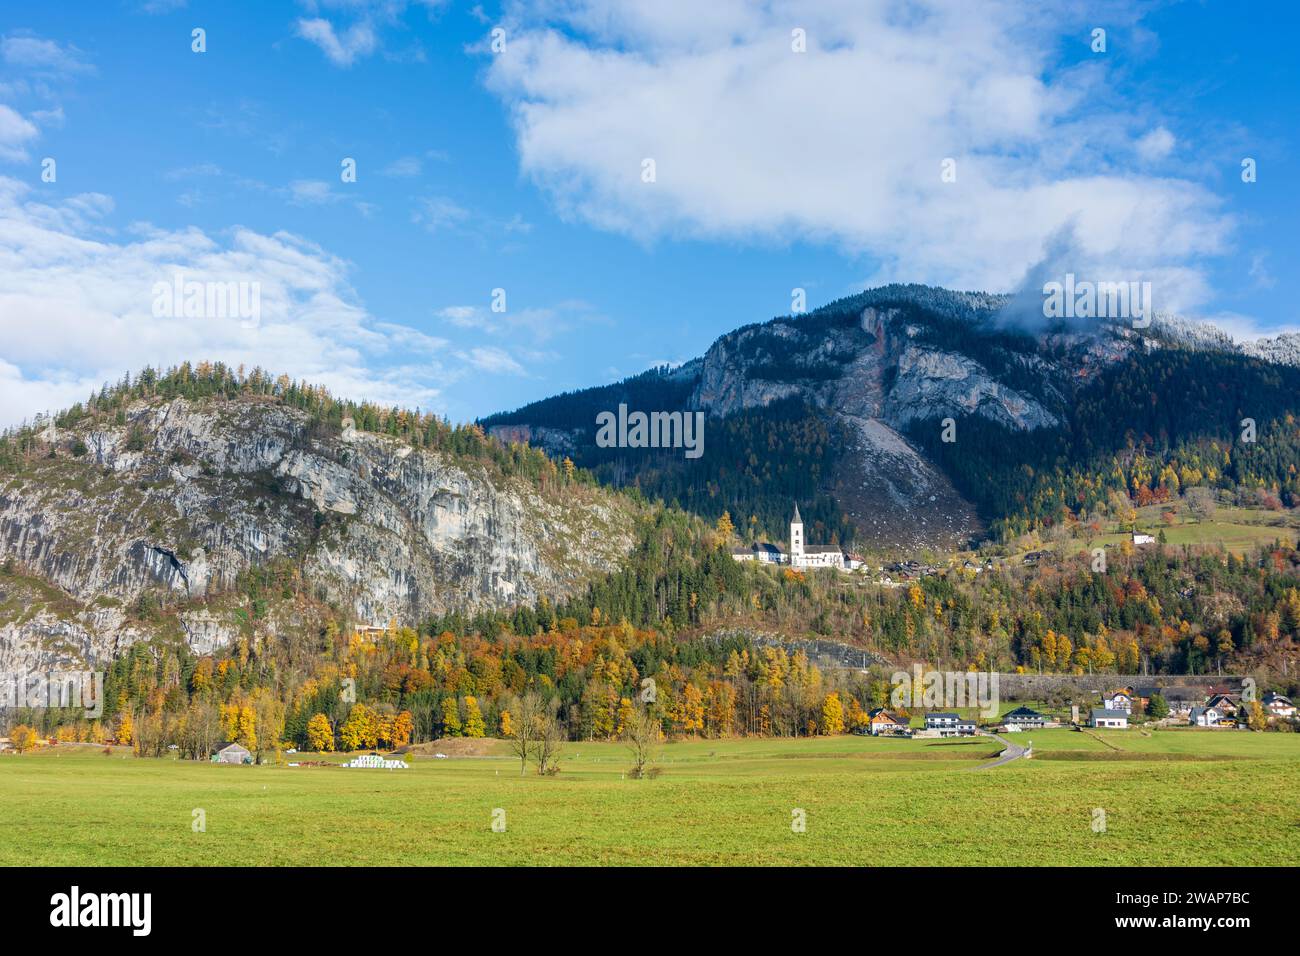 Stainach-Pürgg: village and church Pürgg in Schladming-Dachstein, Steiermark, Styria, Austria Stock Photo